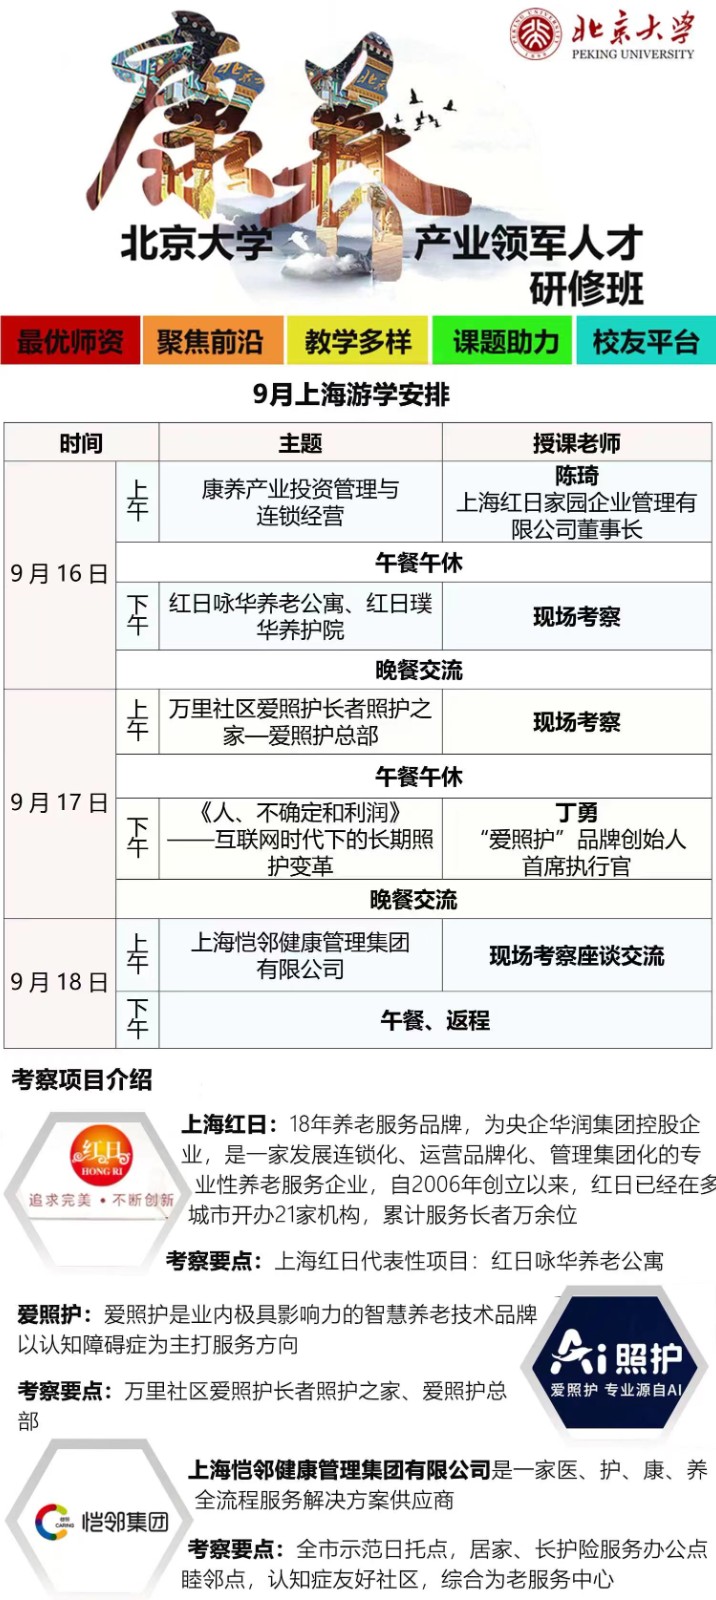 北京大学康养产业领军人才研修班2023年9月_丁勇_互联网时代下的长期照护变革